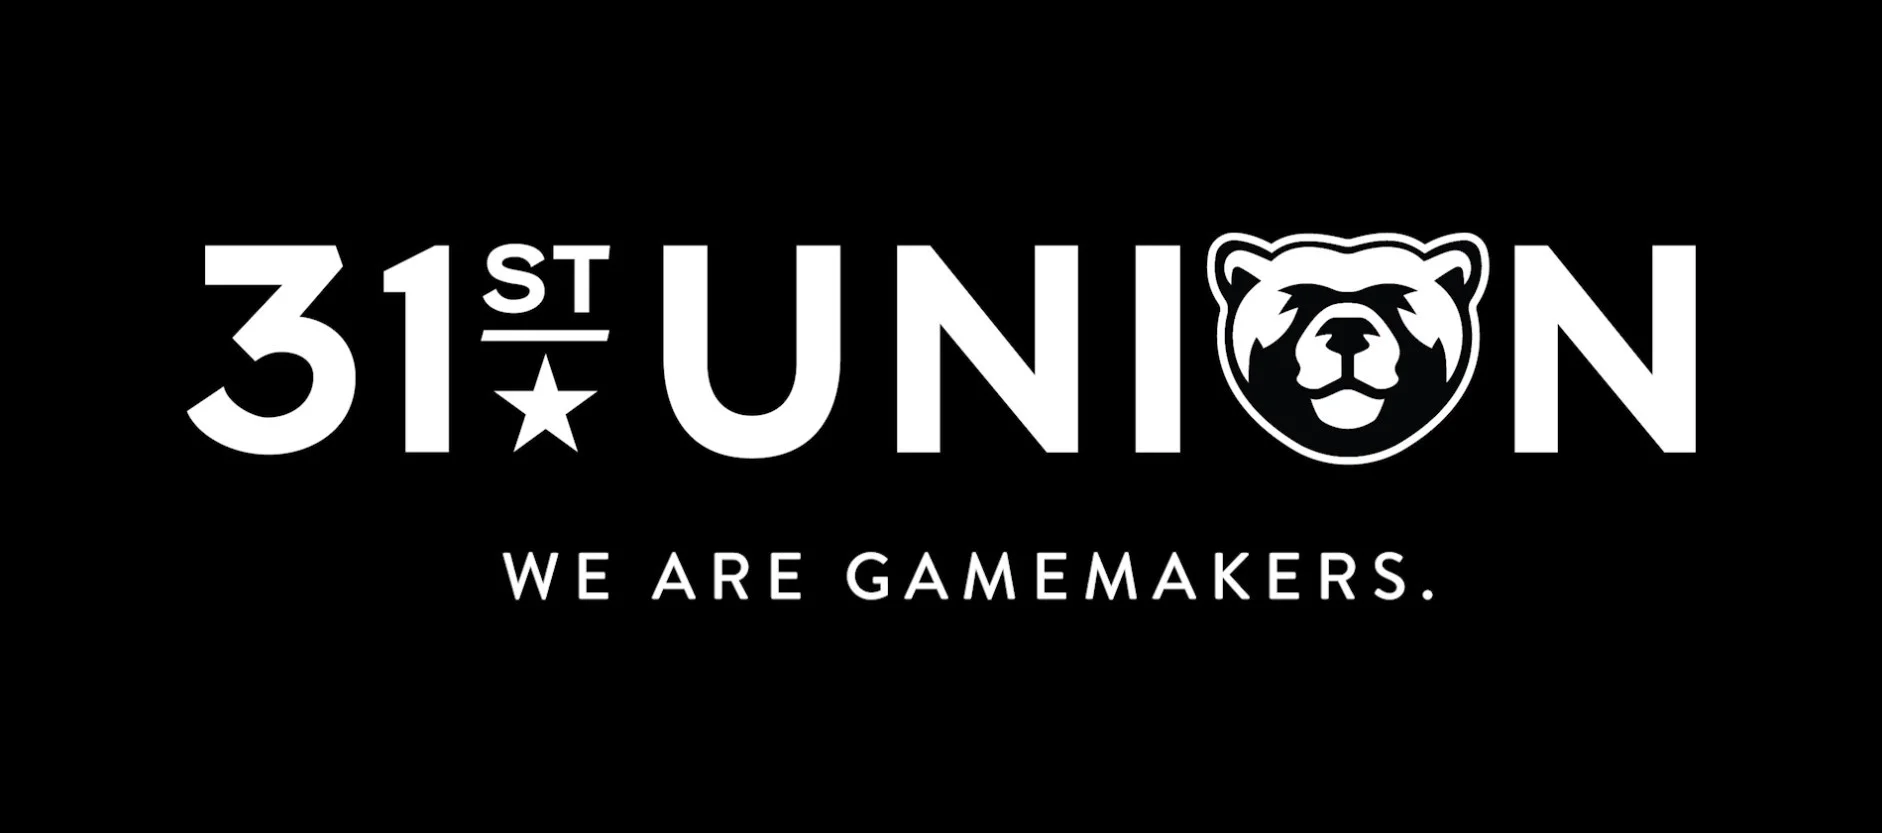 Официально: студия 2K Games и автора Dead Space теперь называется 31st Union - фото 1